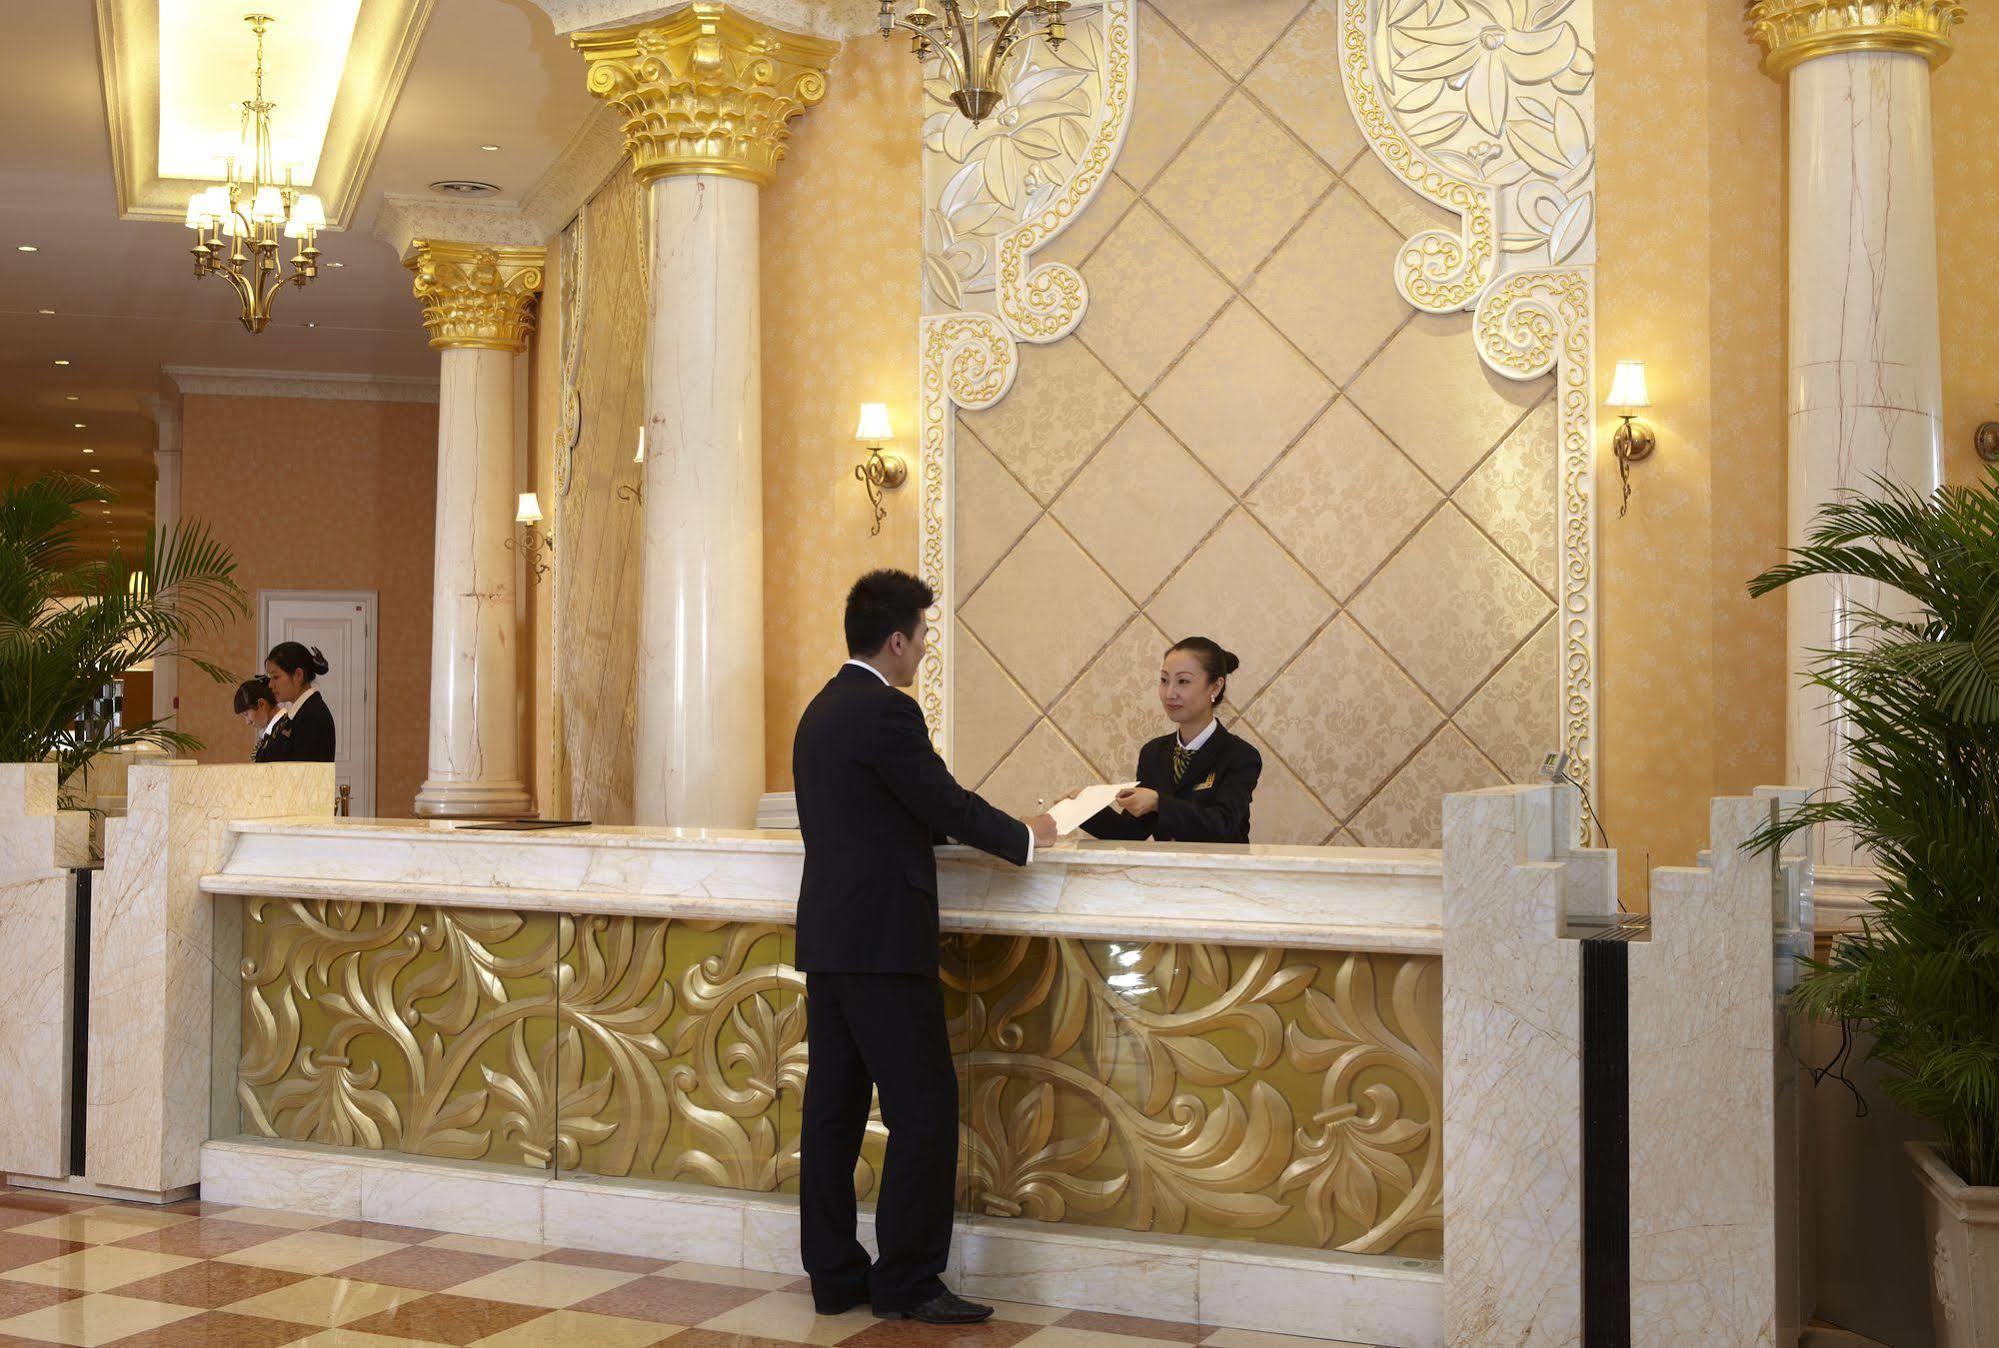 Nh Shenyang Yuhong Hotell Exteriör bild